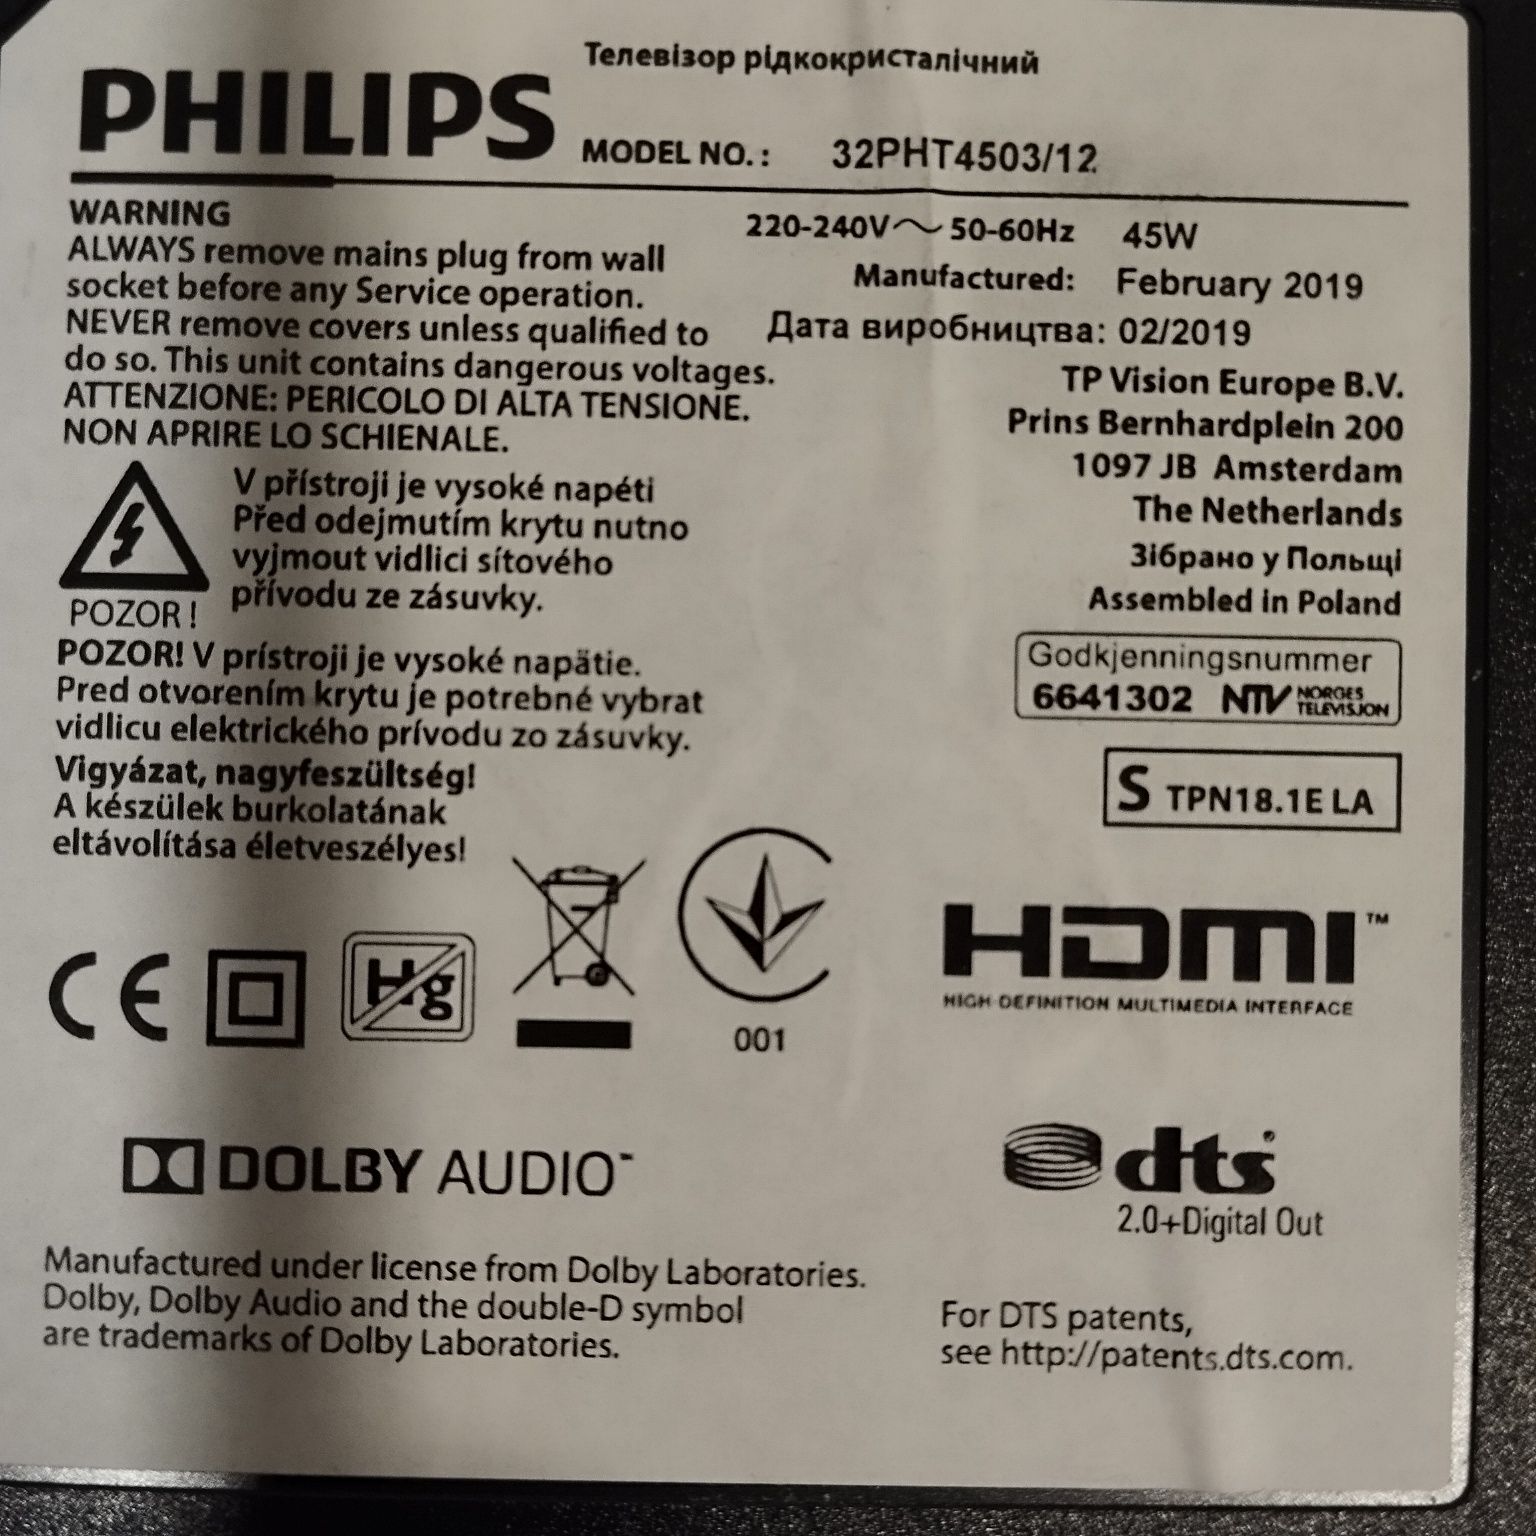 Telewizor LED Philips 32PHT4503/12 sprzedam lub zamienię